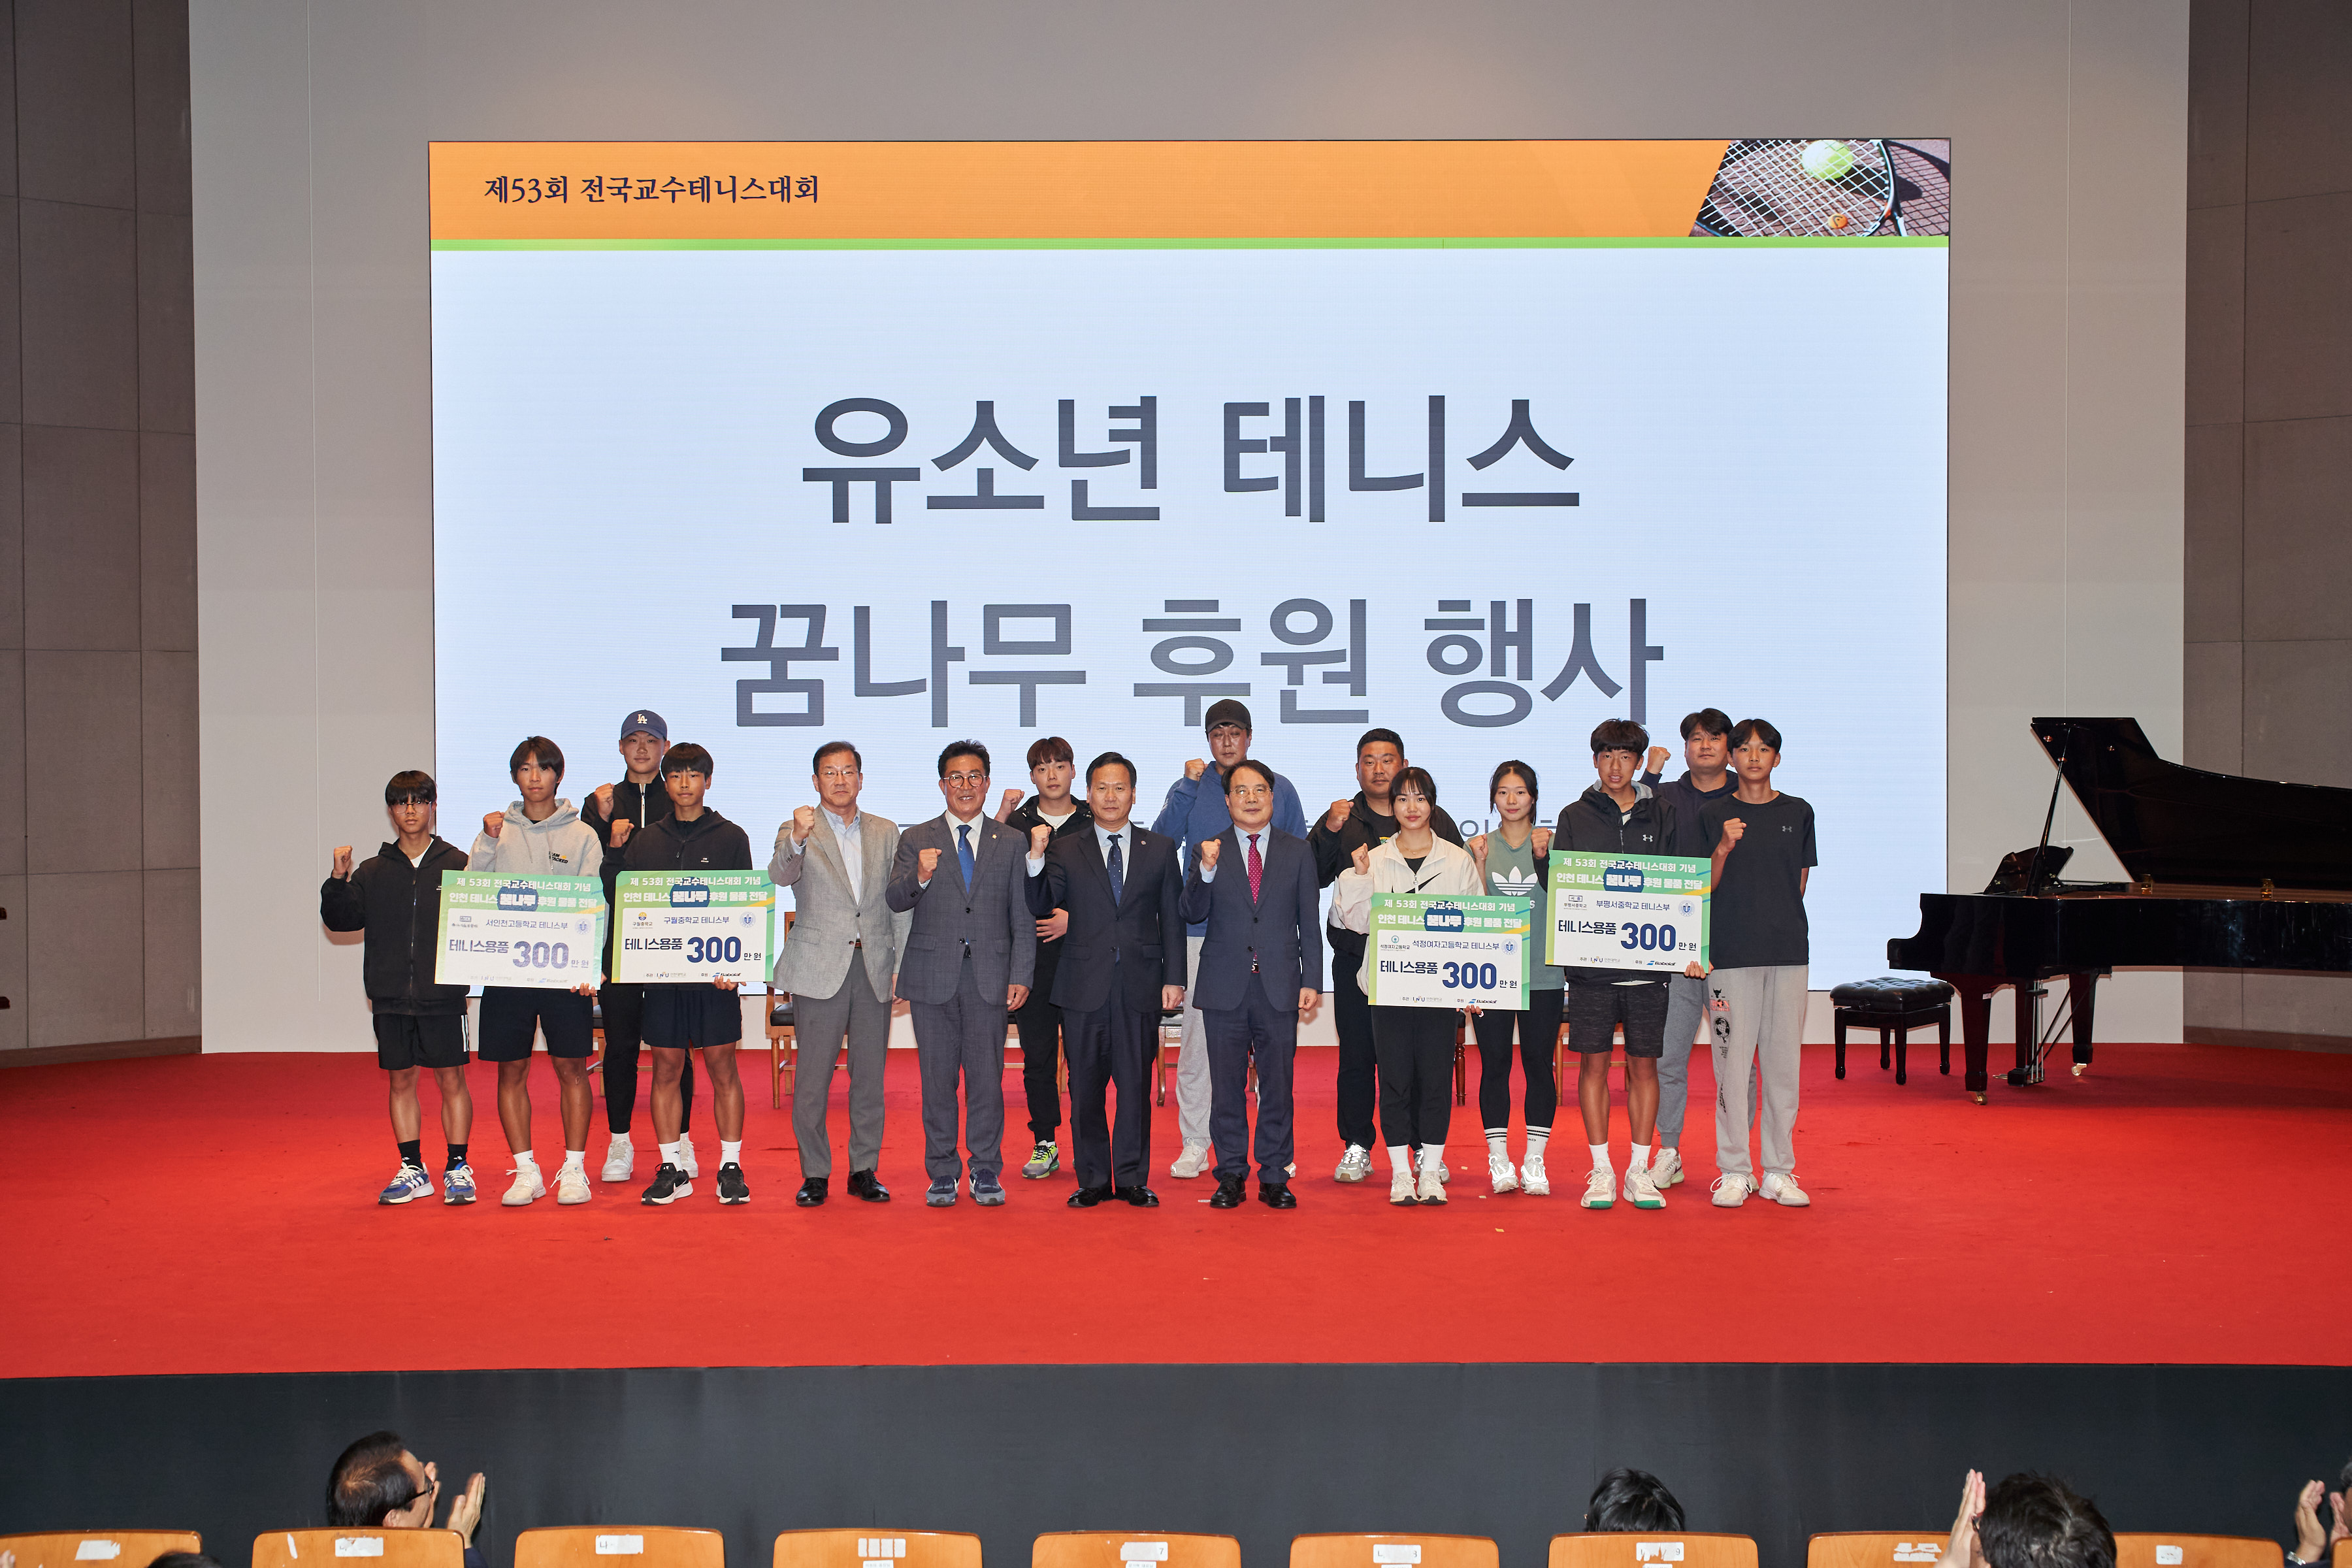 지난 15일 시민 참여 사전 행사를 시작으로 18일까지 인천대학교(총장 박종태)에서 개최된 한국대학교수테니스연맹 주최 전국교수테니스대회가 성료되었다.